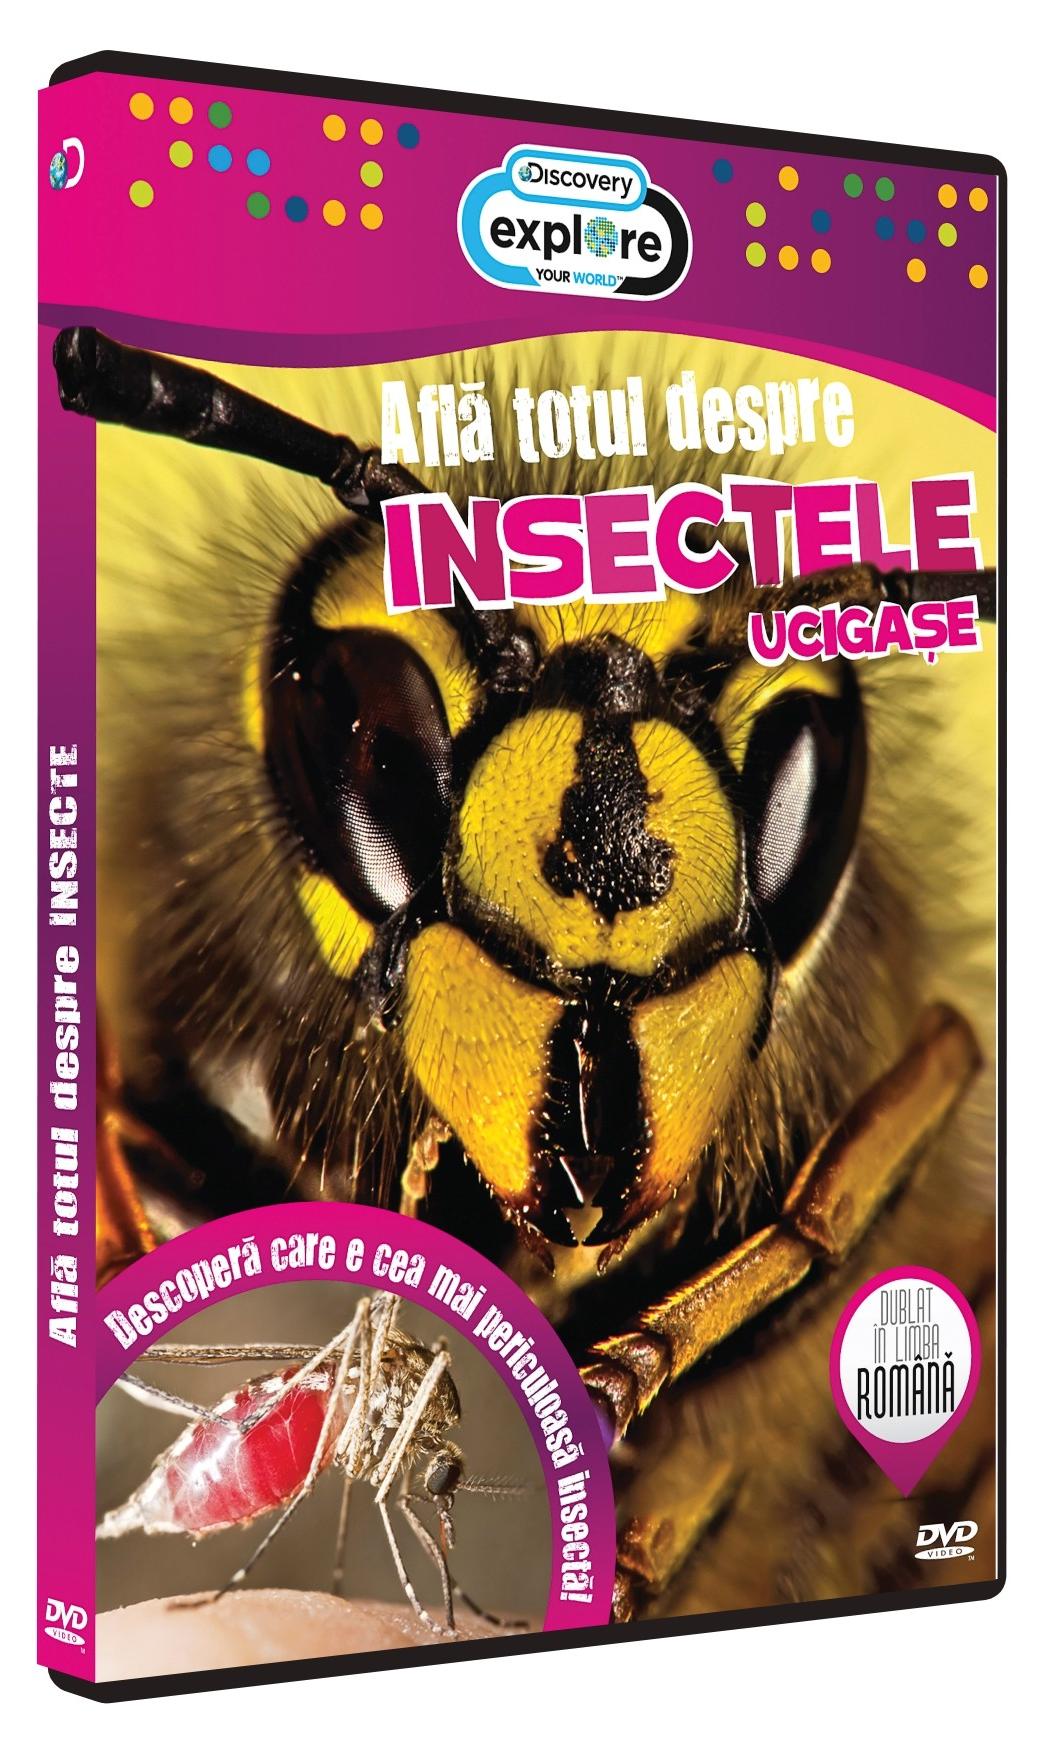 DVD Afla totul despre Insecte ucigase